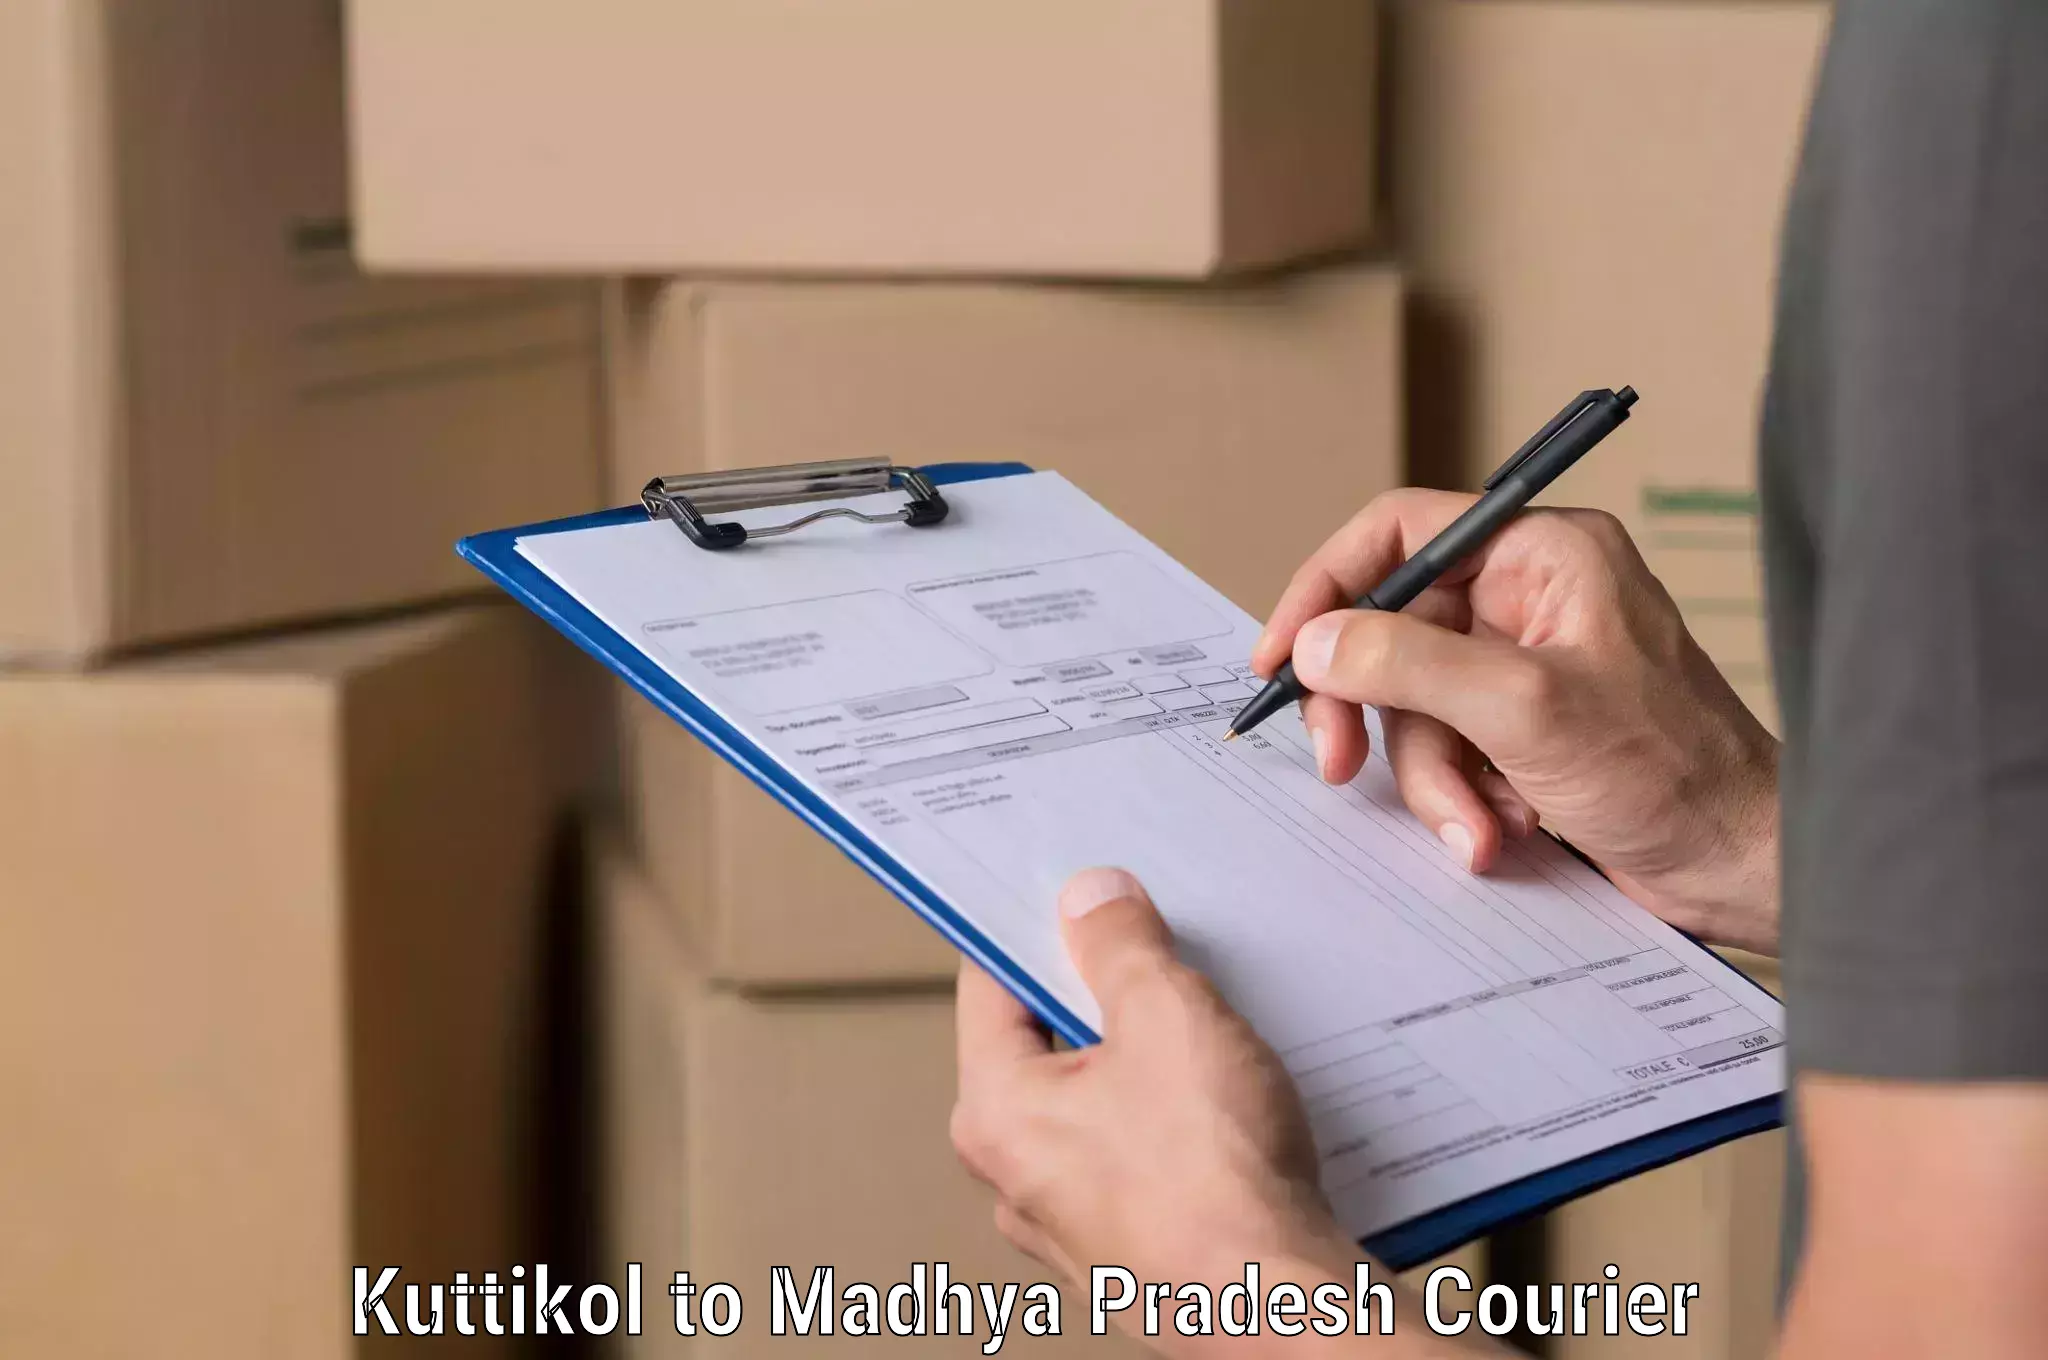 Professional courier handling Kuttikol to Niwari